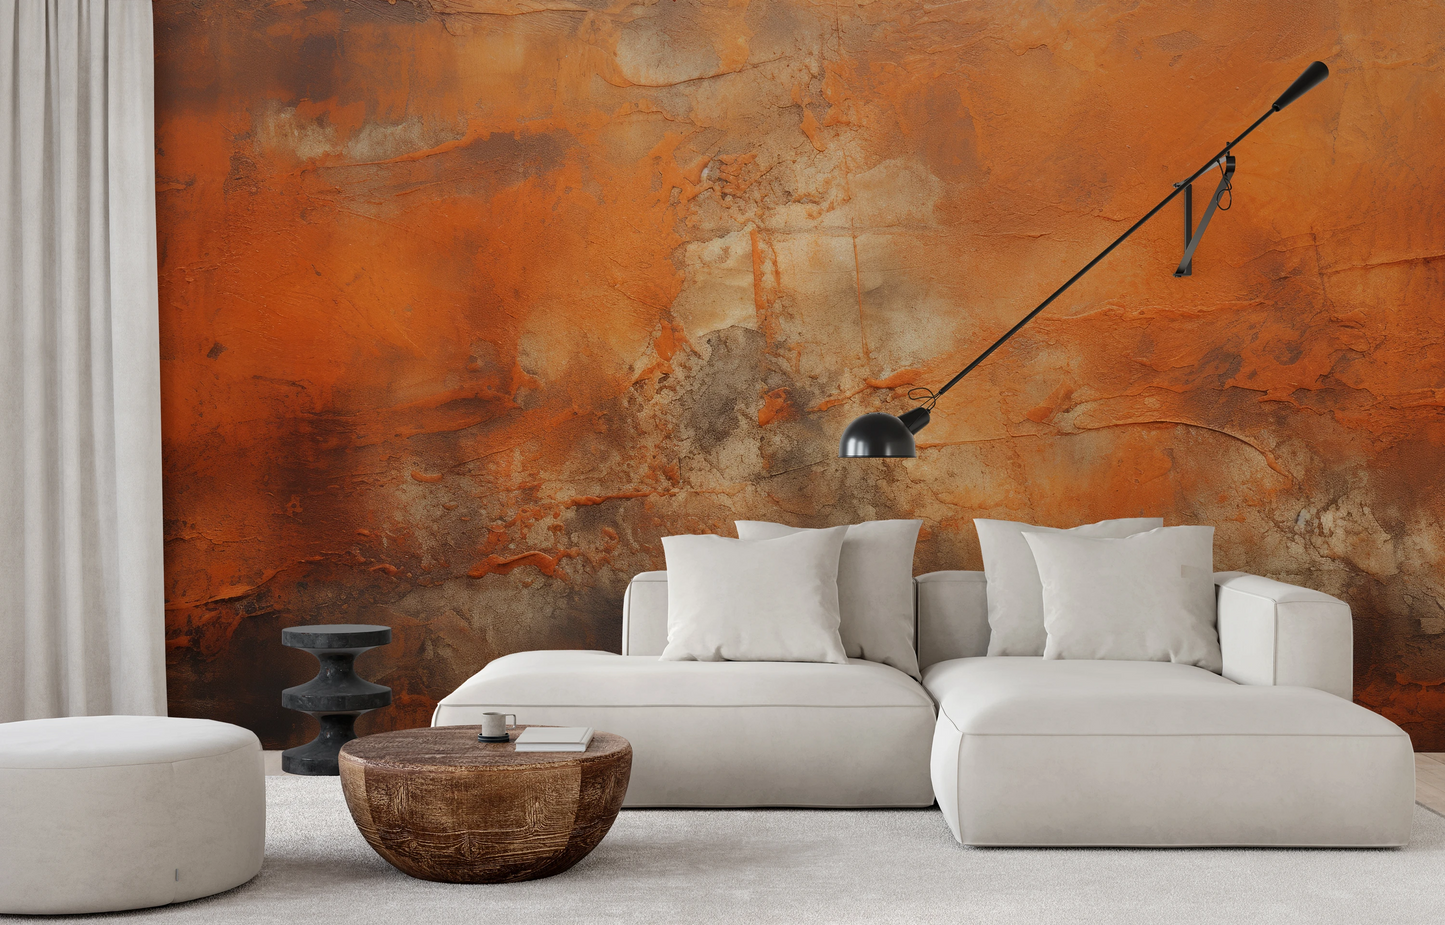 Fototapeta malowana o nazwie Copper Patina pokazana w aranżacji wnętrza.